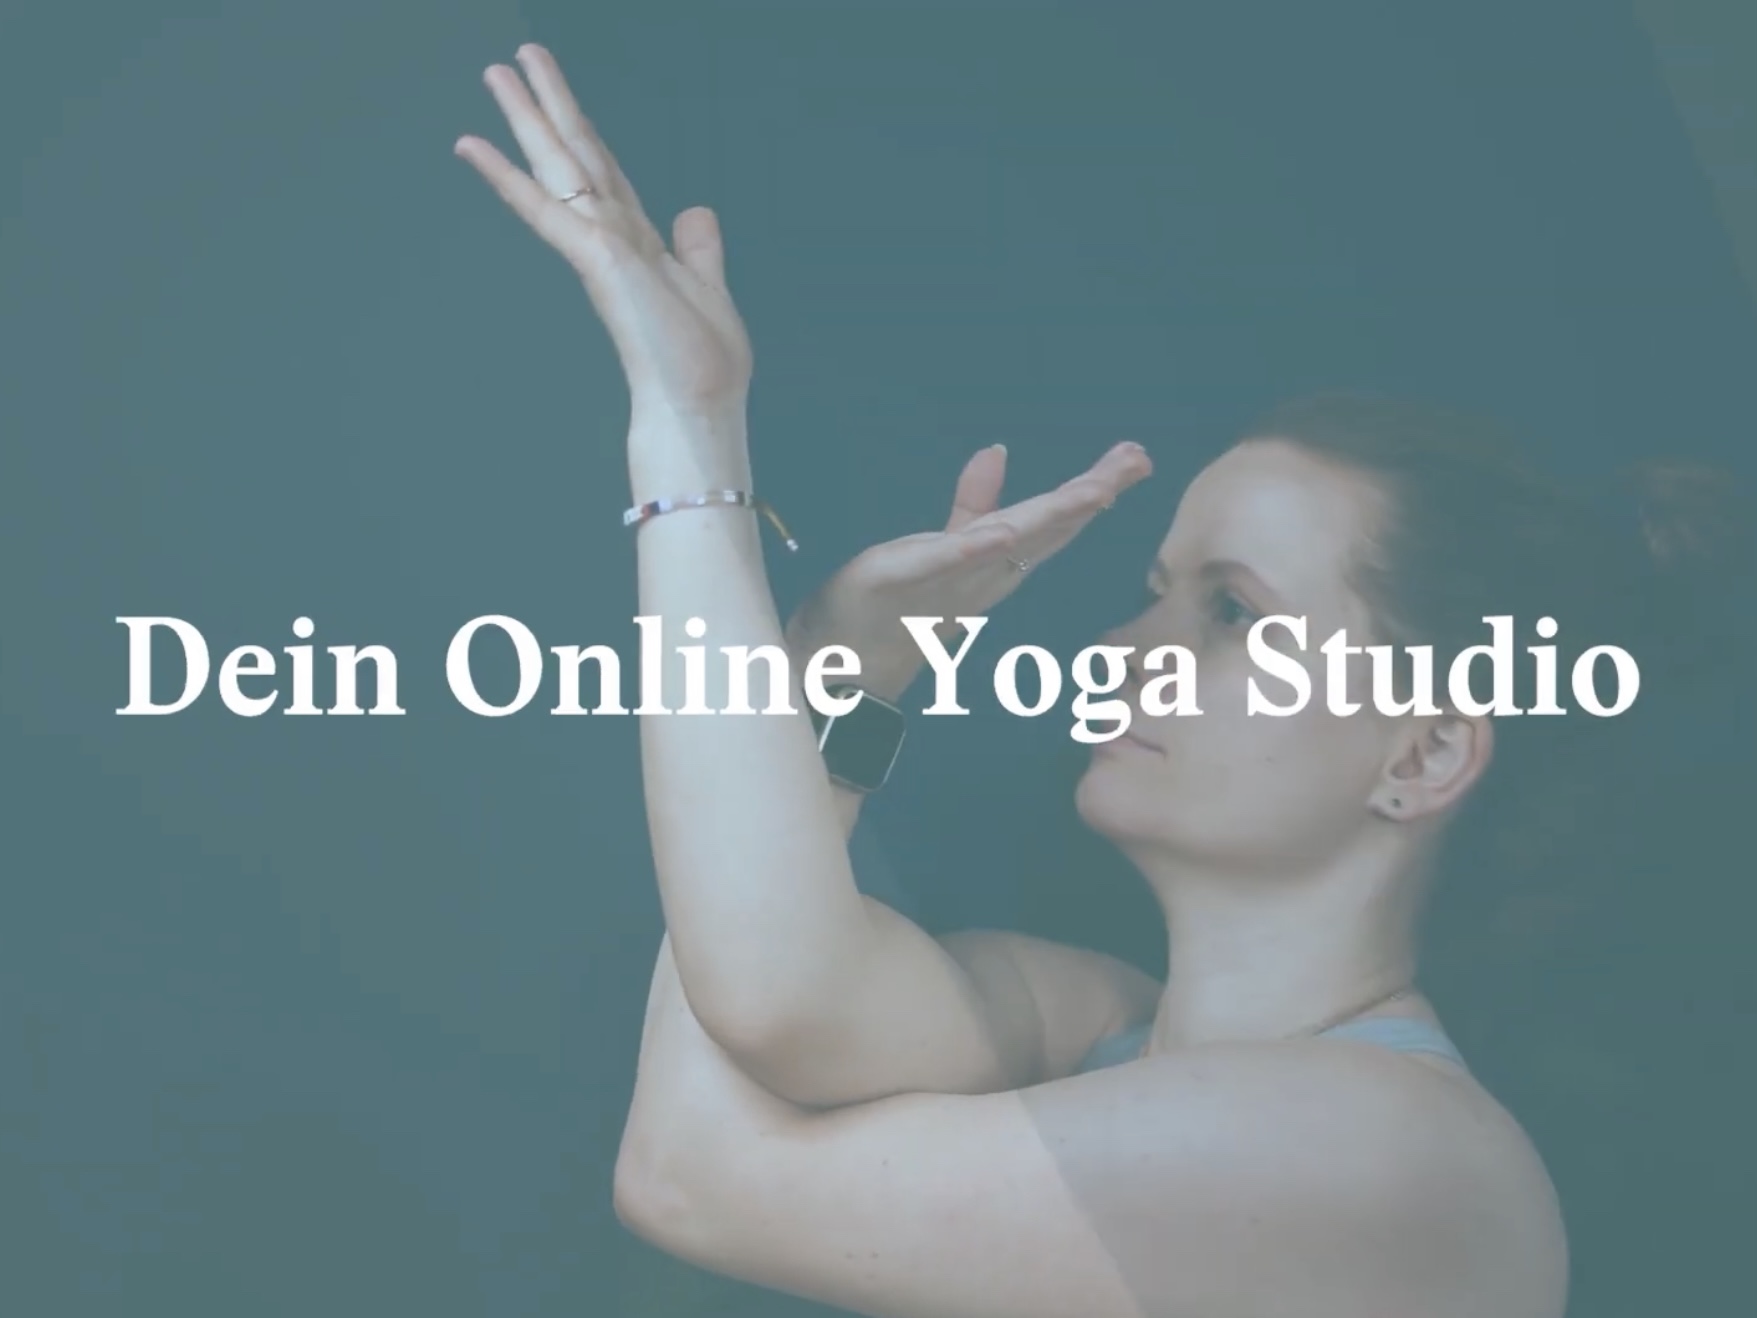 Element Yoga TV - Für mehr Du selbst Dein Online Yoga Studio für Yoga mit Konzept und für strukturiertes Üben. Hunderte HD Hatha Yoga, Yin, Vinyasa, Meditation, Pranayama Videos. 14 Tage kostenfrei.